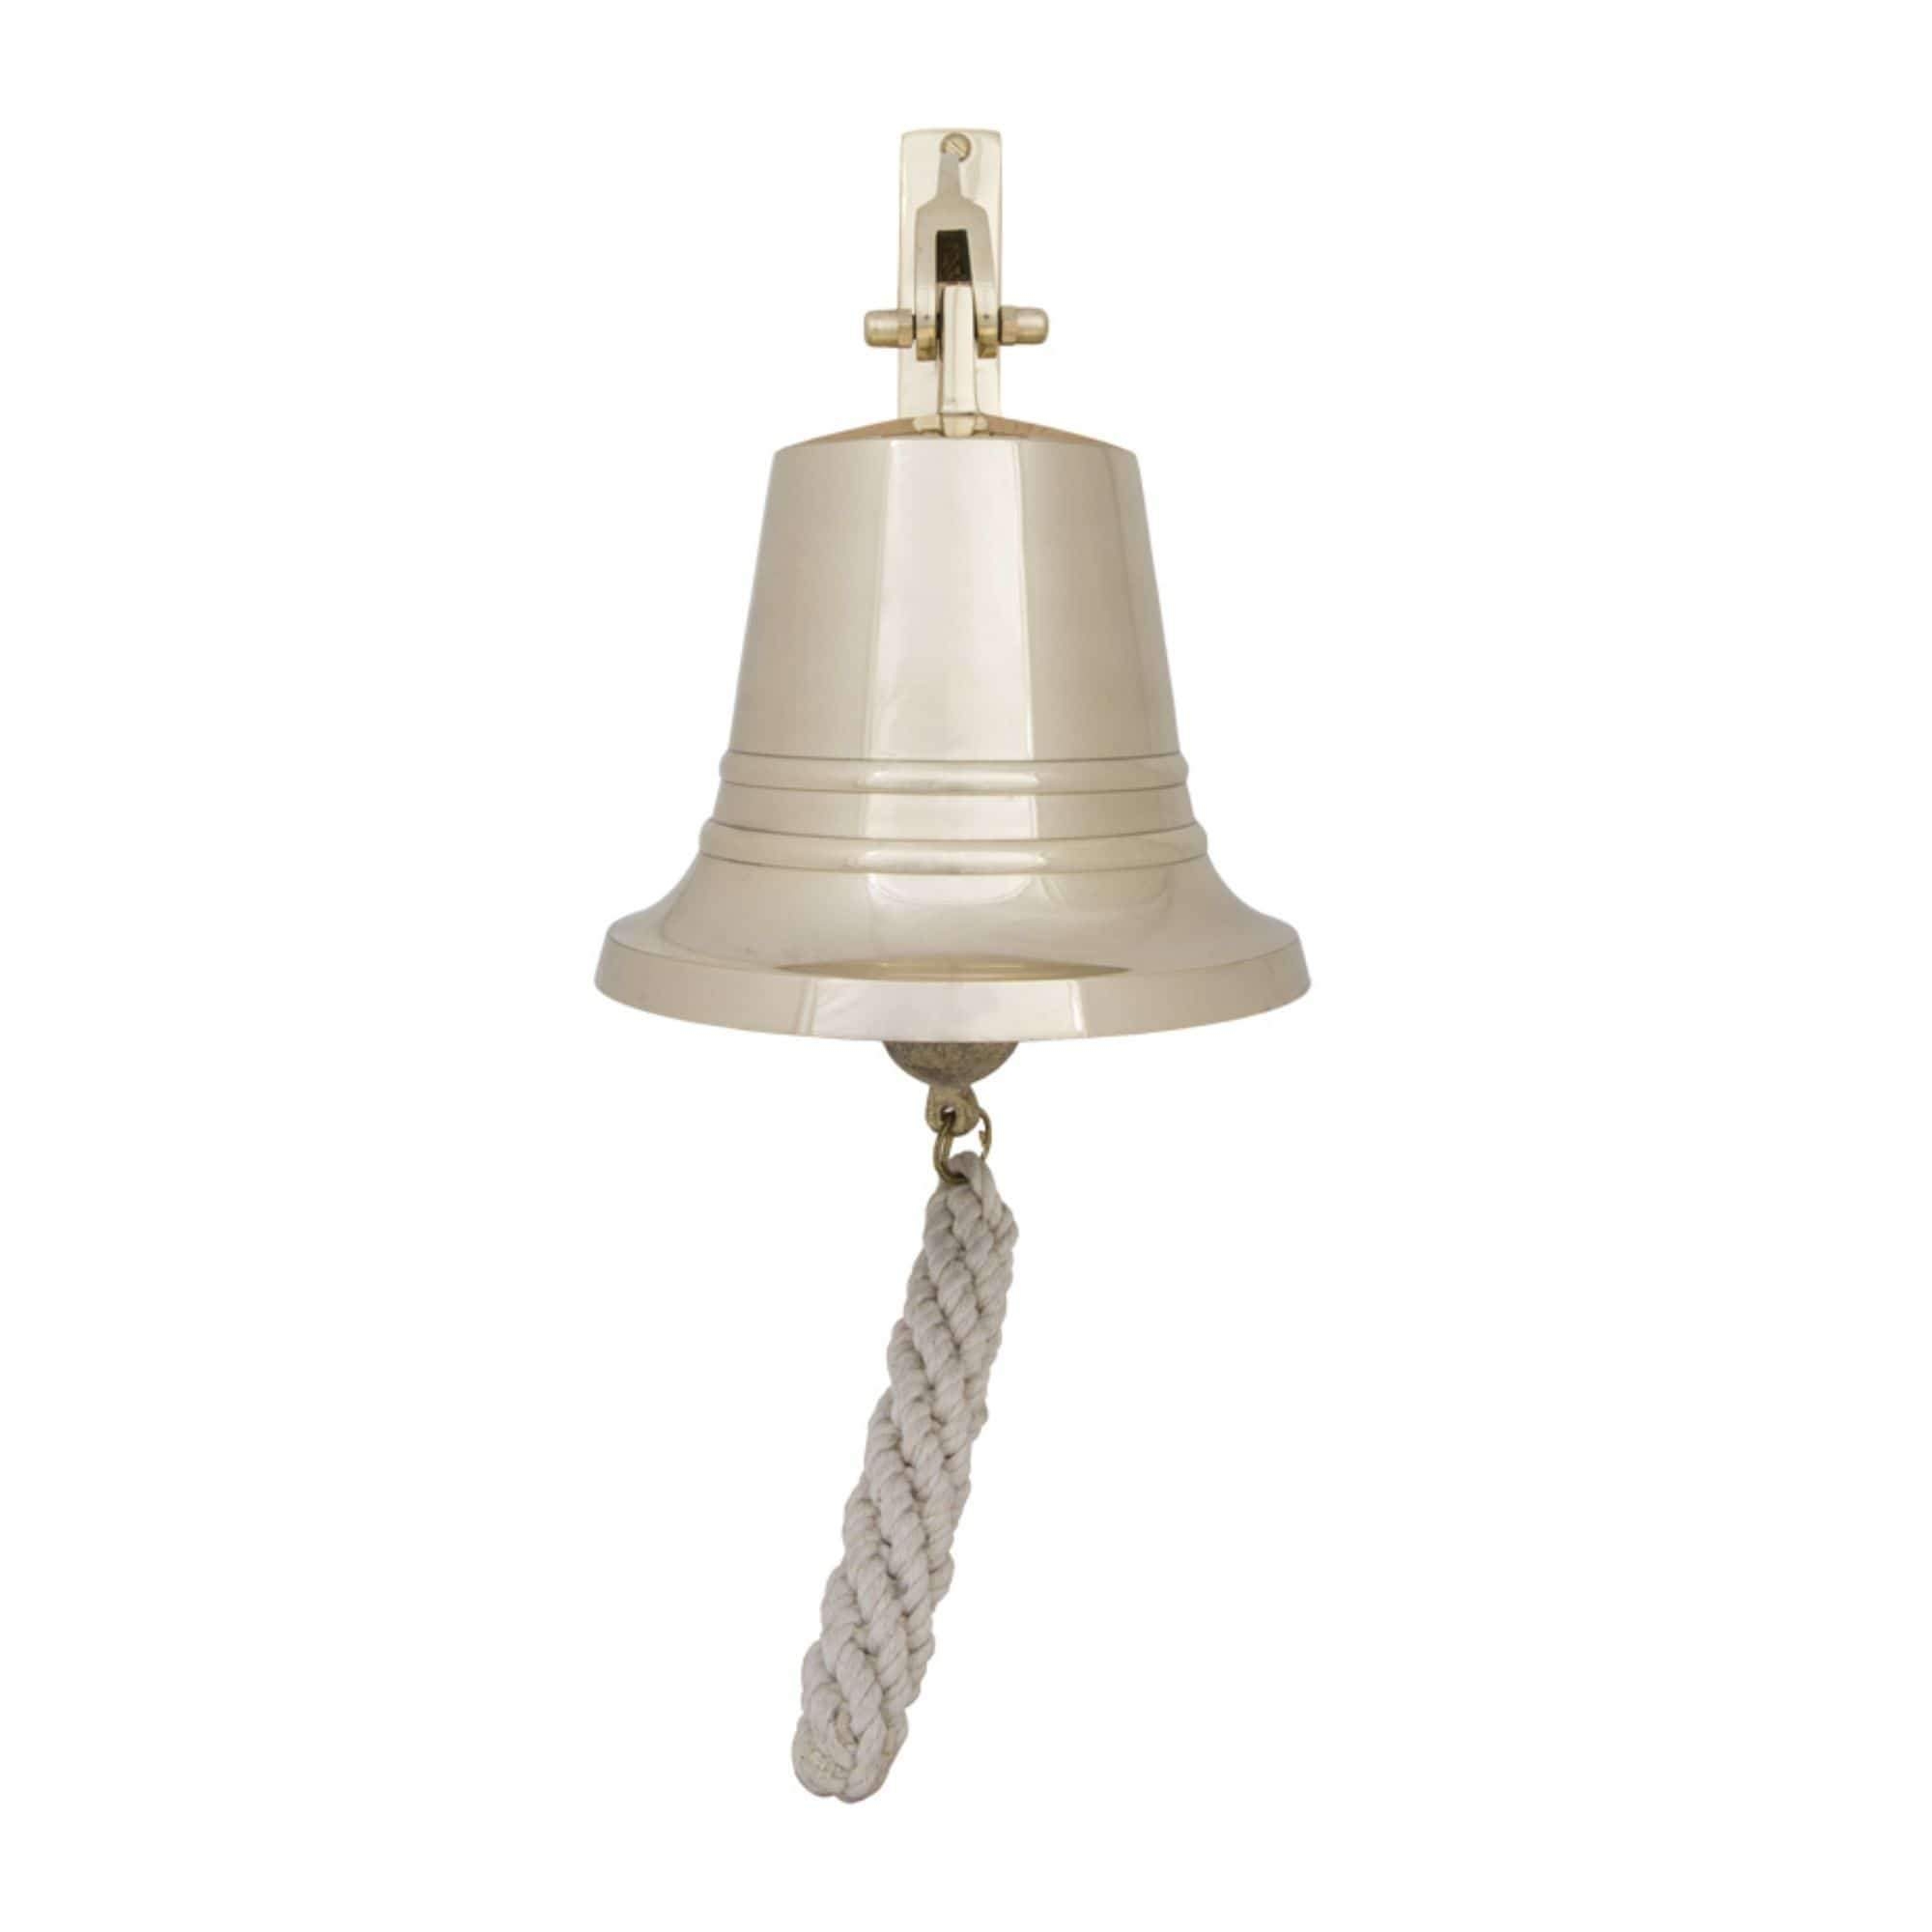 Bell – Solid Brass – 12.5 cm